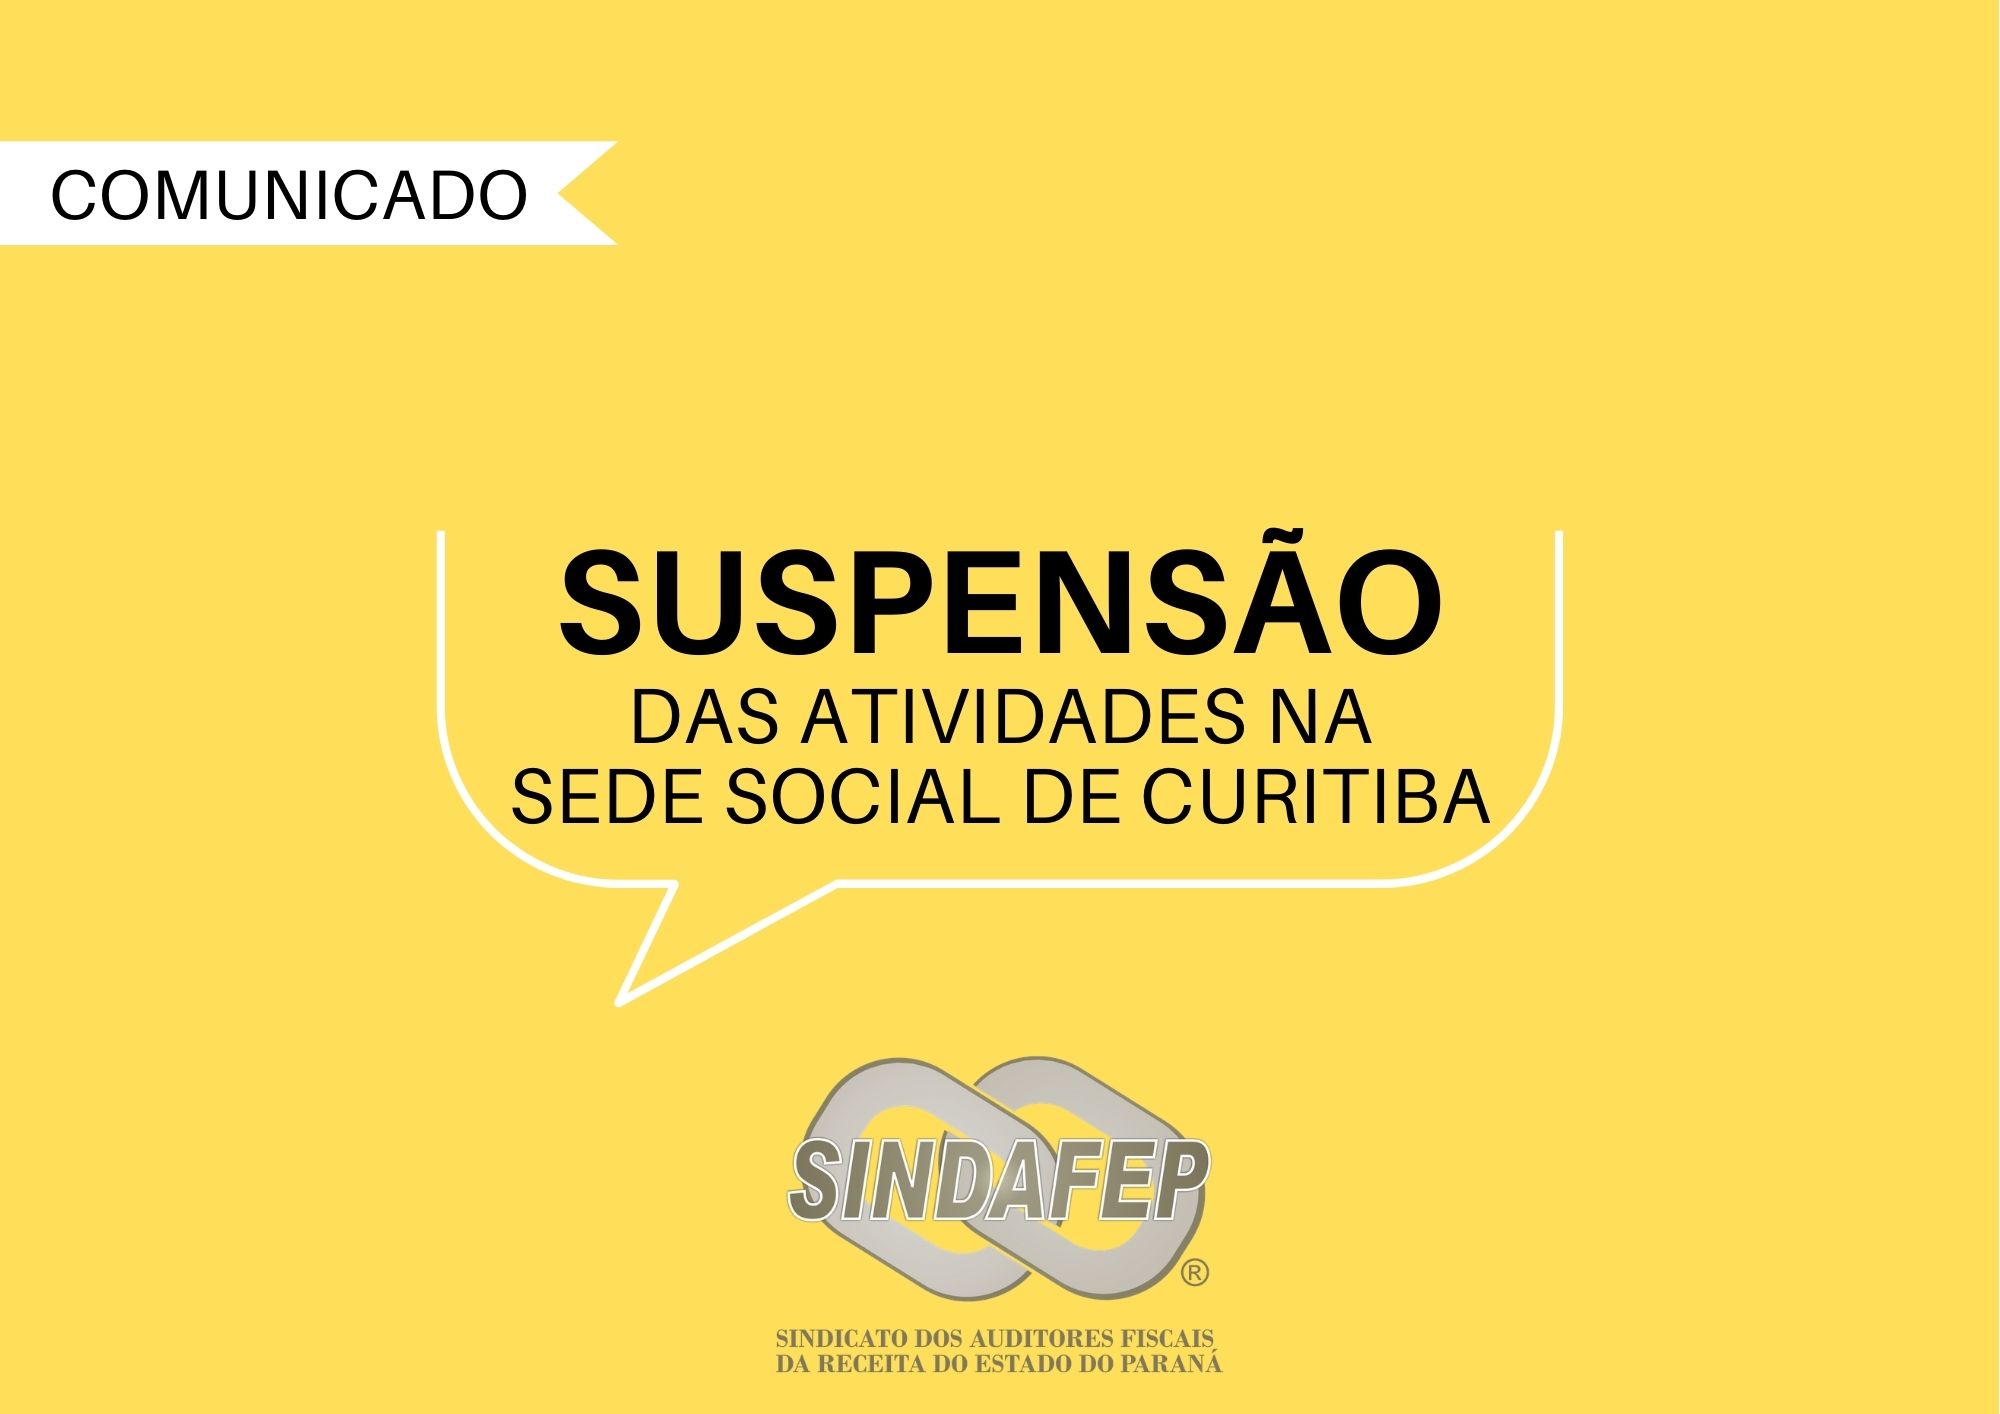 Sindafep cancela atividades presenciais na sede social de Curitiba por 13 dias